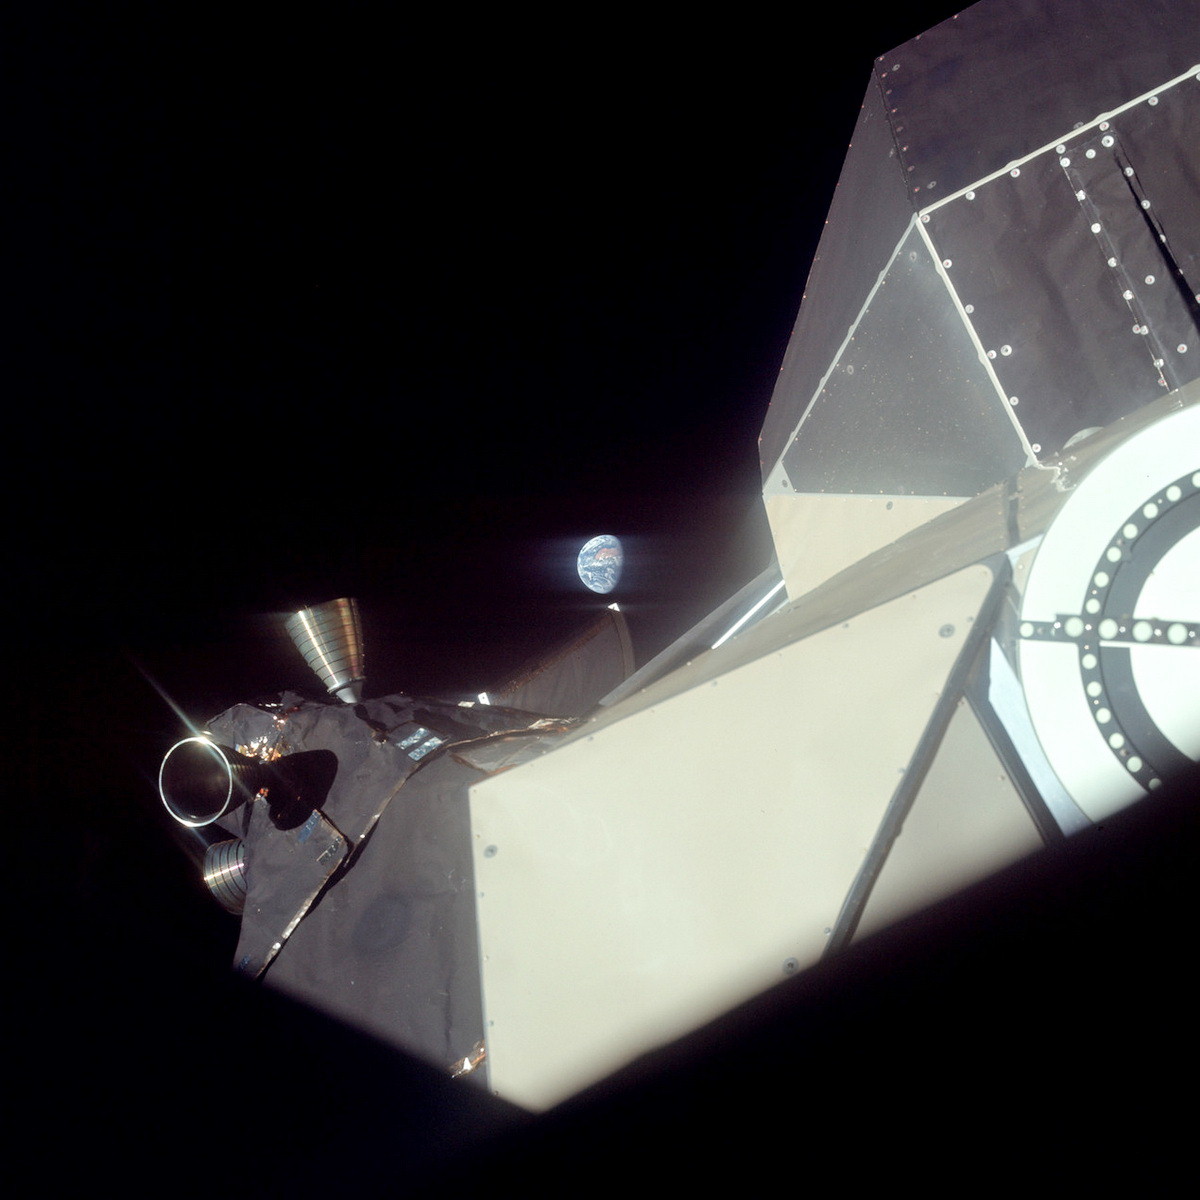 Земля и двигатели ориентации лунного модуля в иллюминаторе Аполлона-11